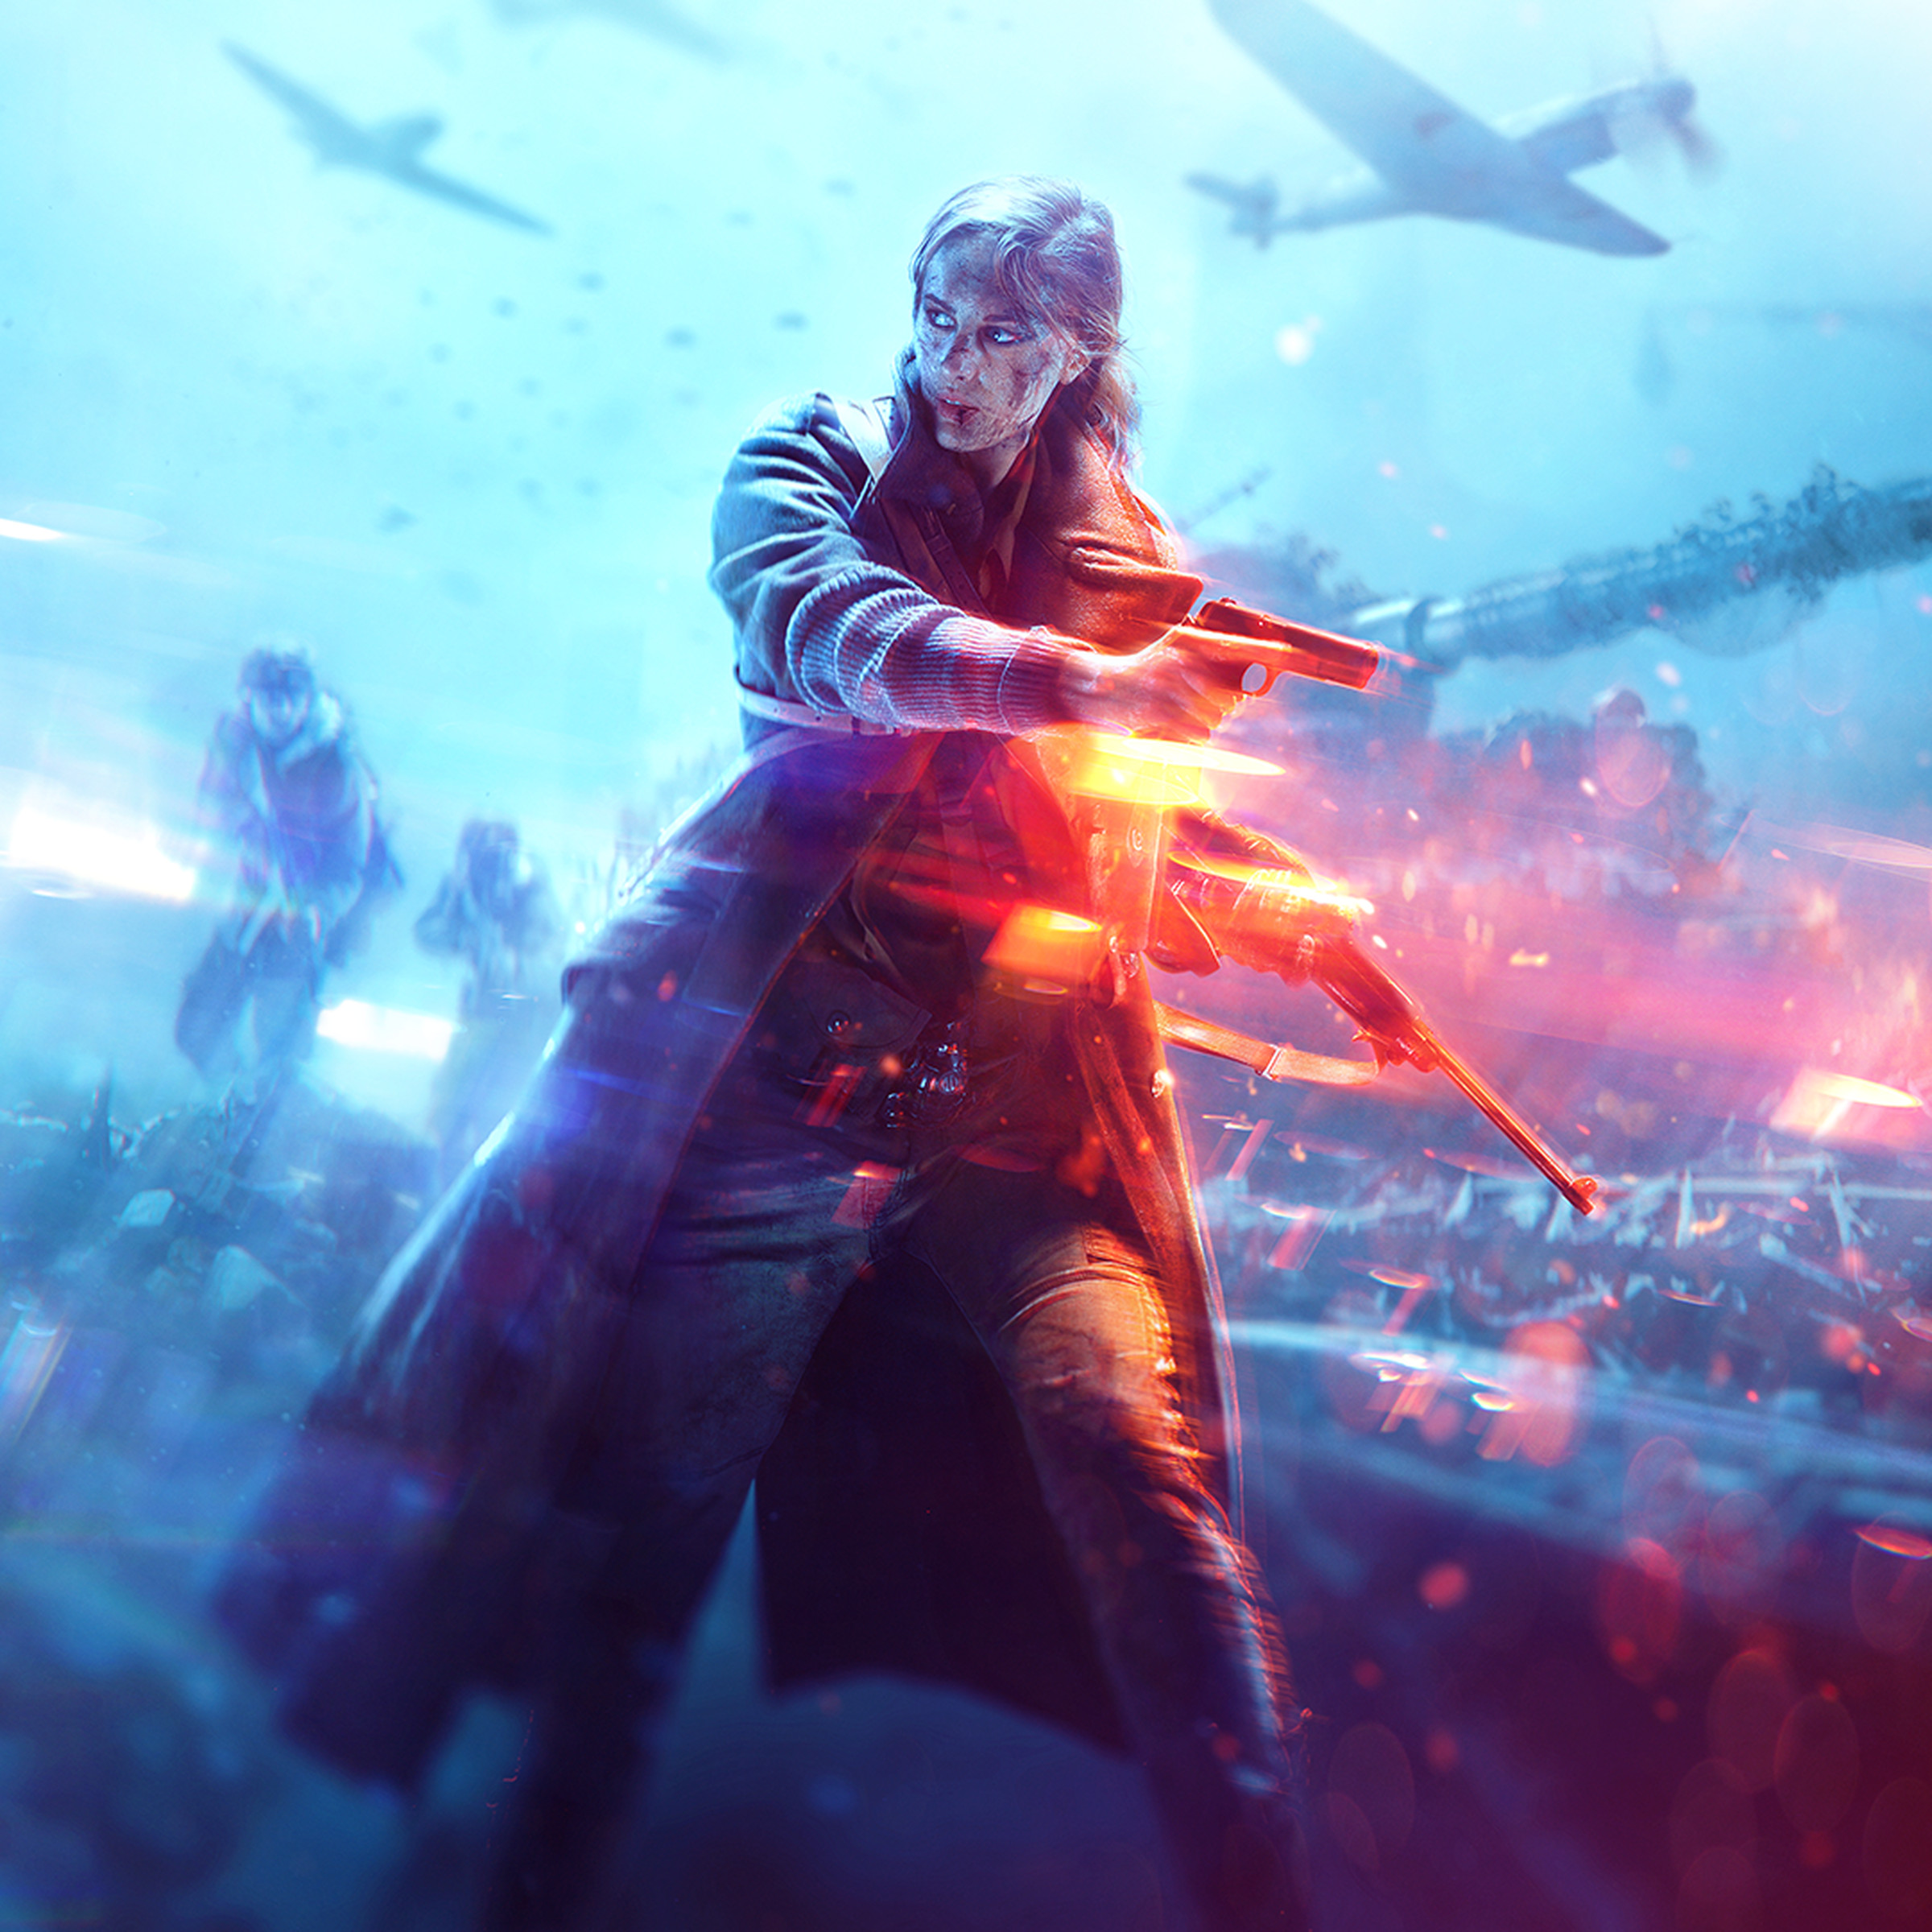 A promotional image for Battlefield V.